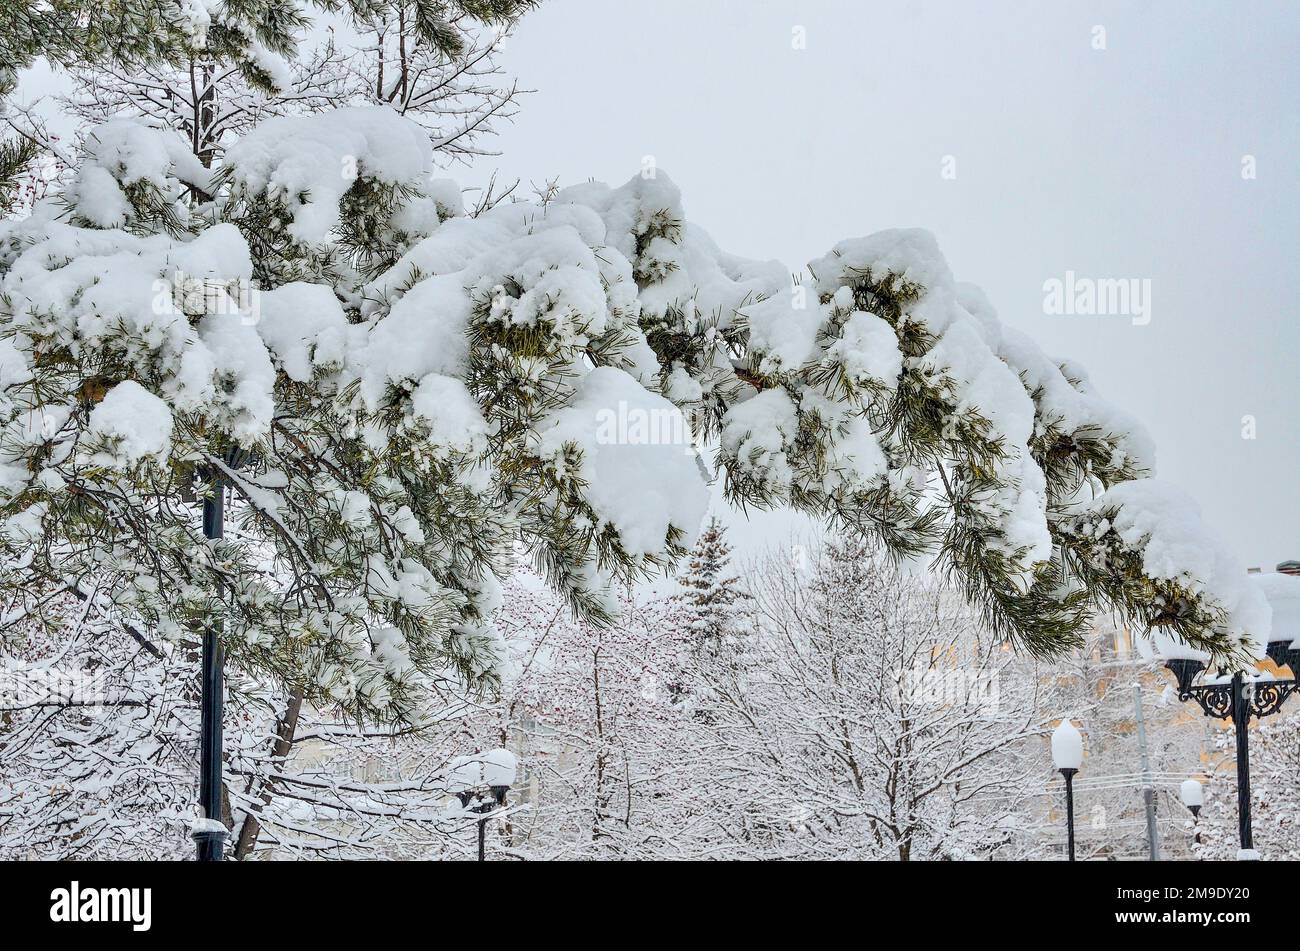 Branche de pins enneigés dans le parc municipal d'hiver proche après de fortes chutes de neige. Aiguilles vertes sous une neige blanche et douce sur un paysage urbain flou arrière-plan Banque D'Images